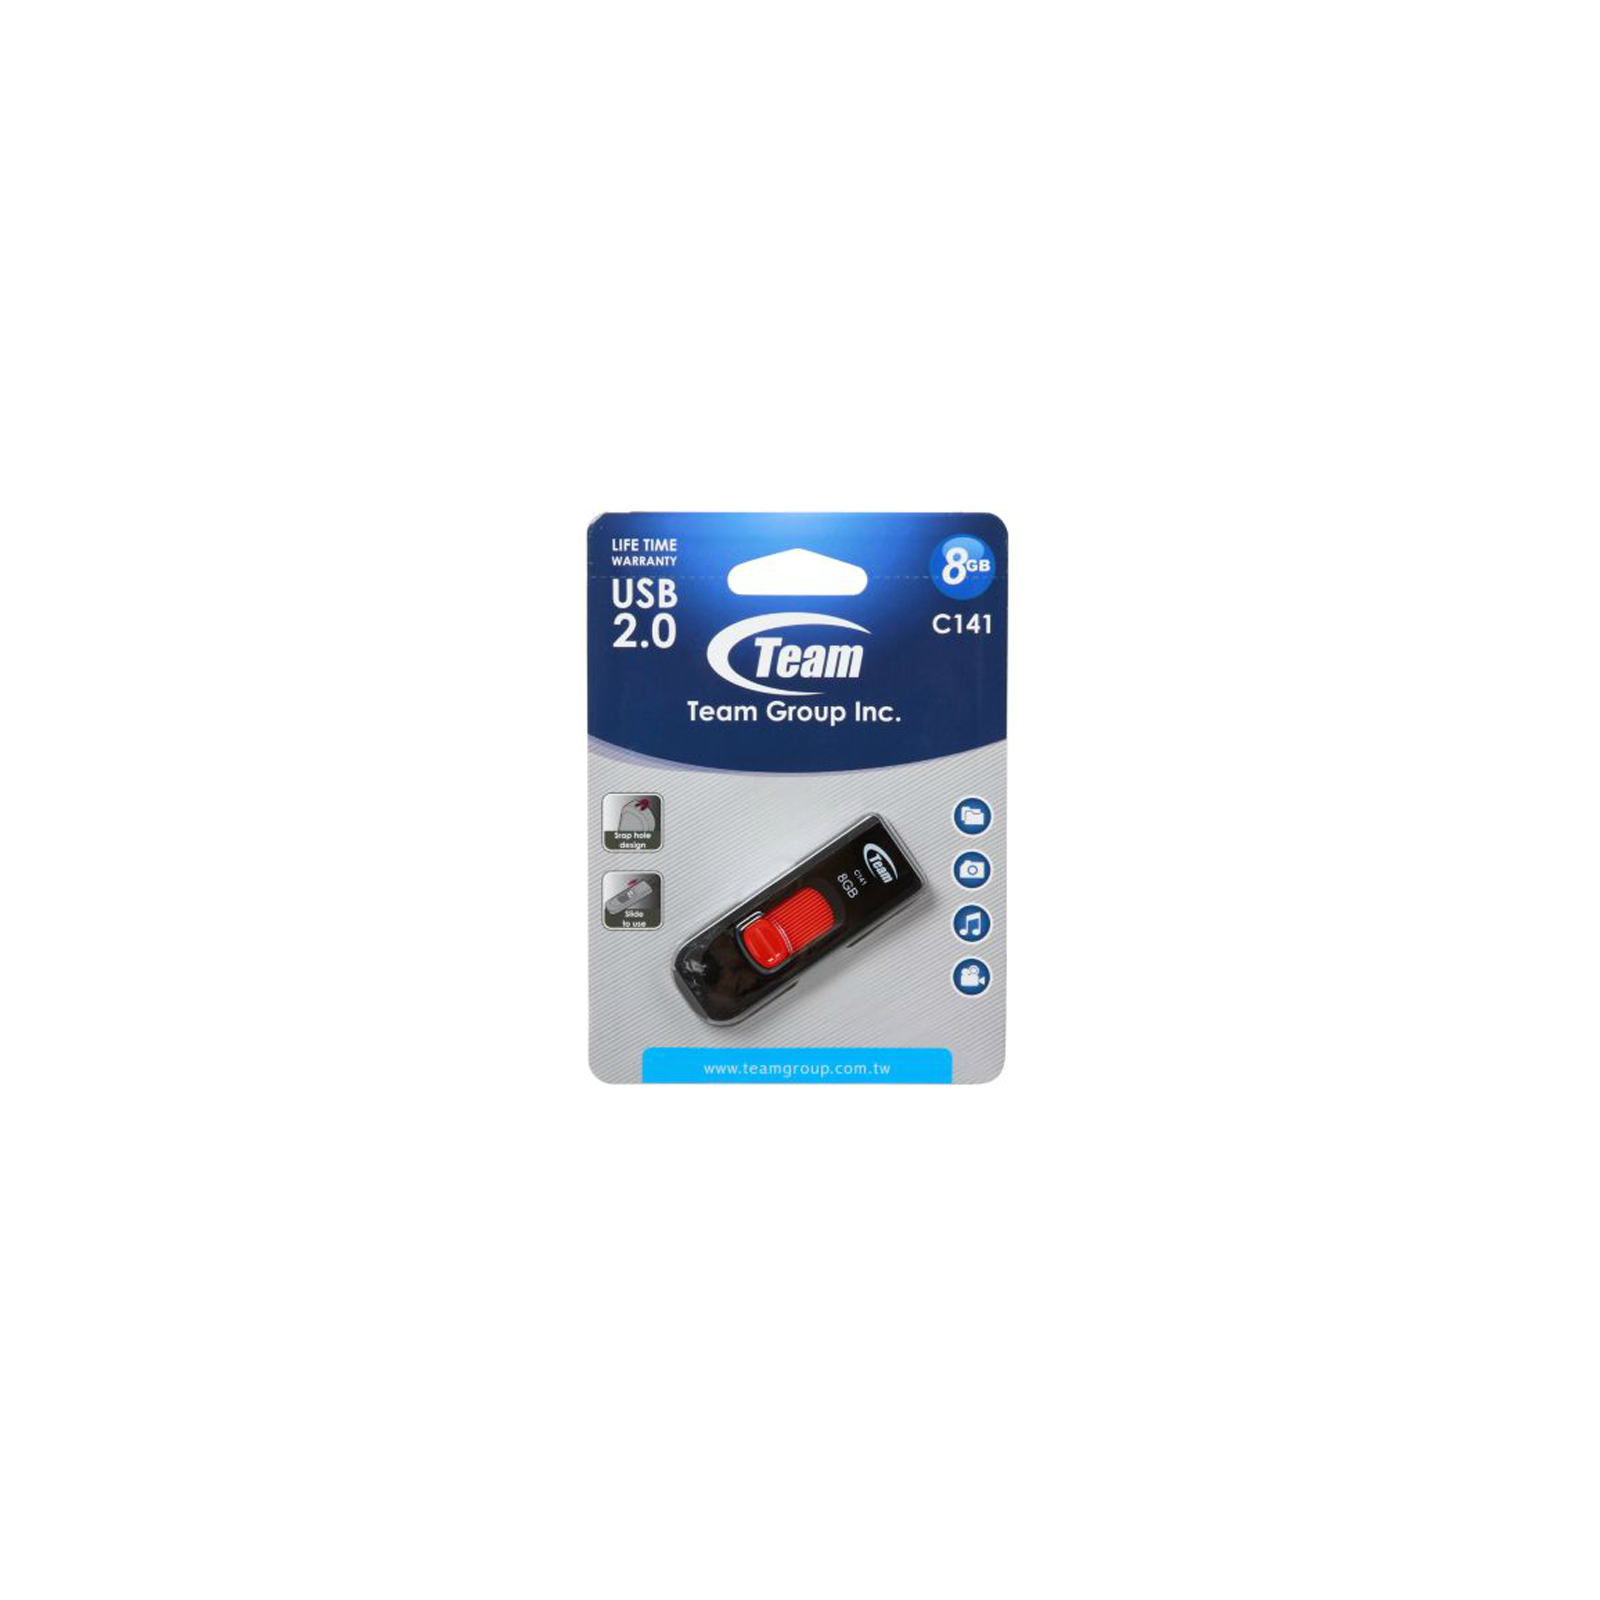 USB флеш накопичувач Team 64GB C141 Green USB 2.0 (TC14164GG01) зображення 5